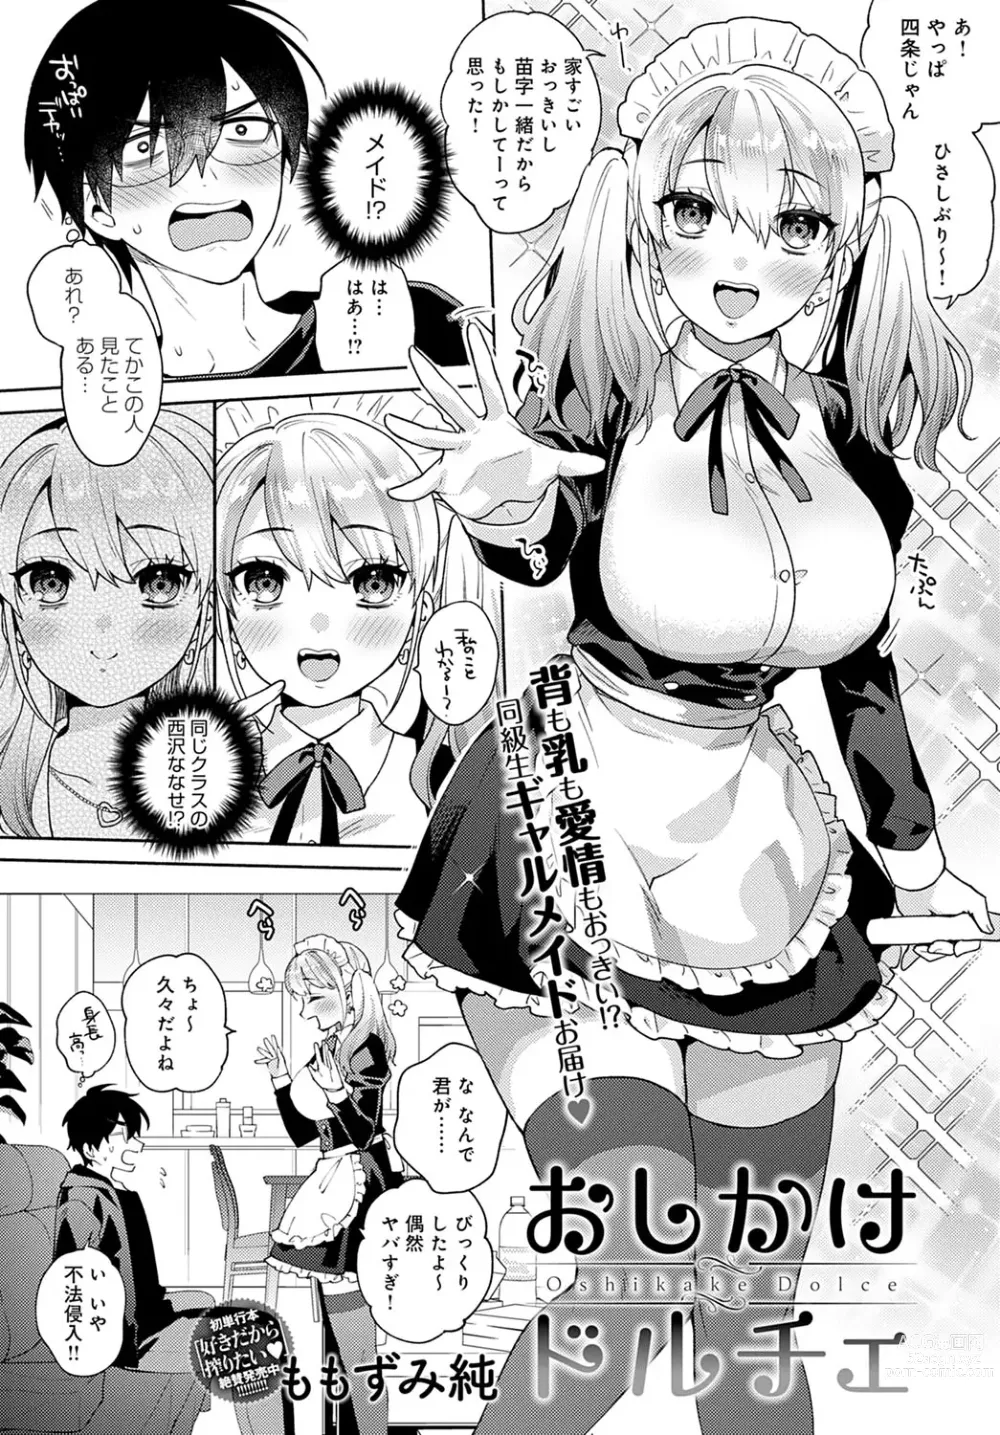 Page 4 of manga Oshikake Dolce